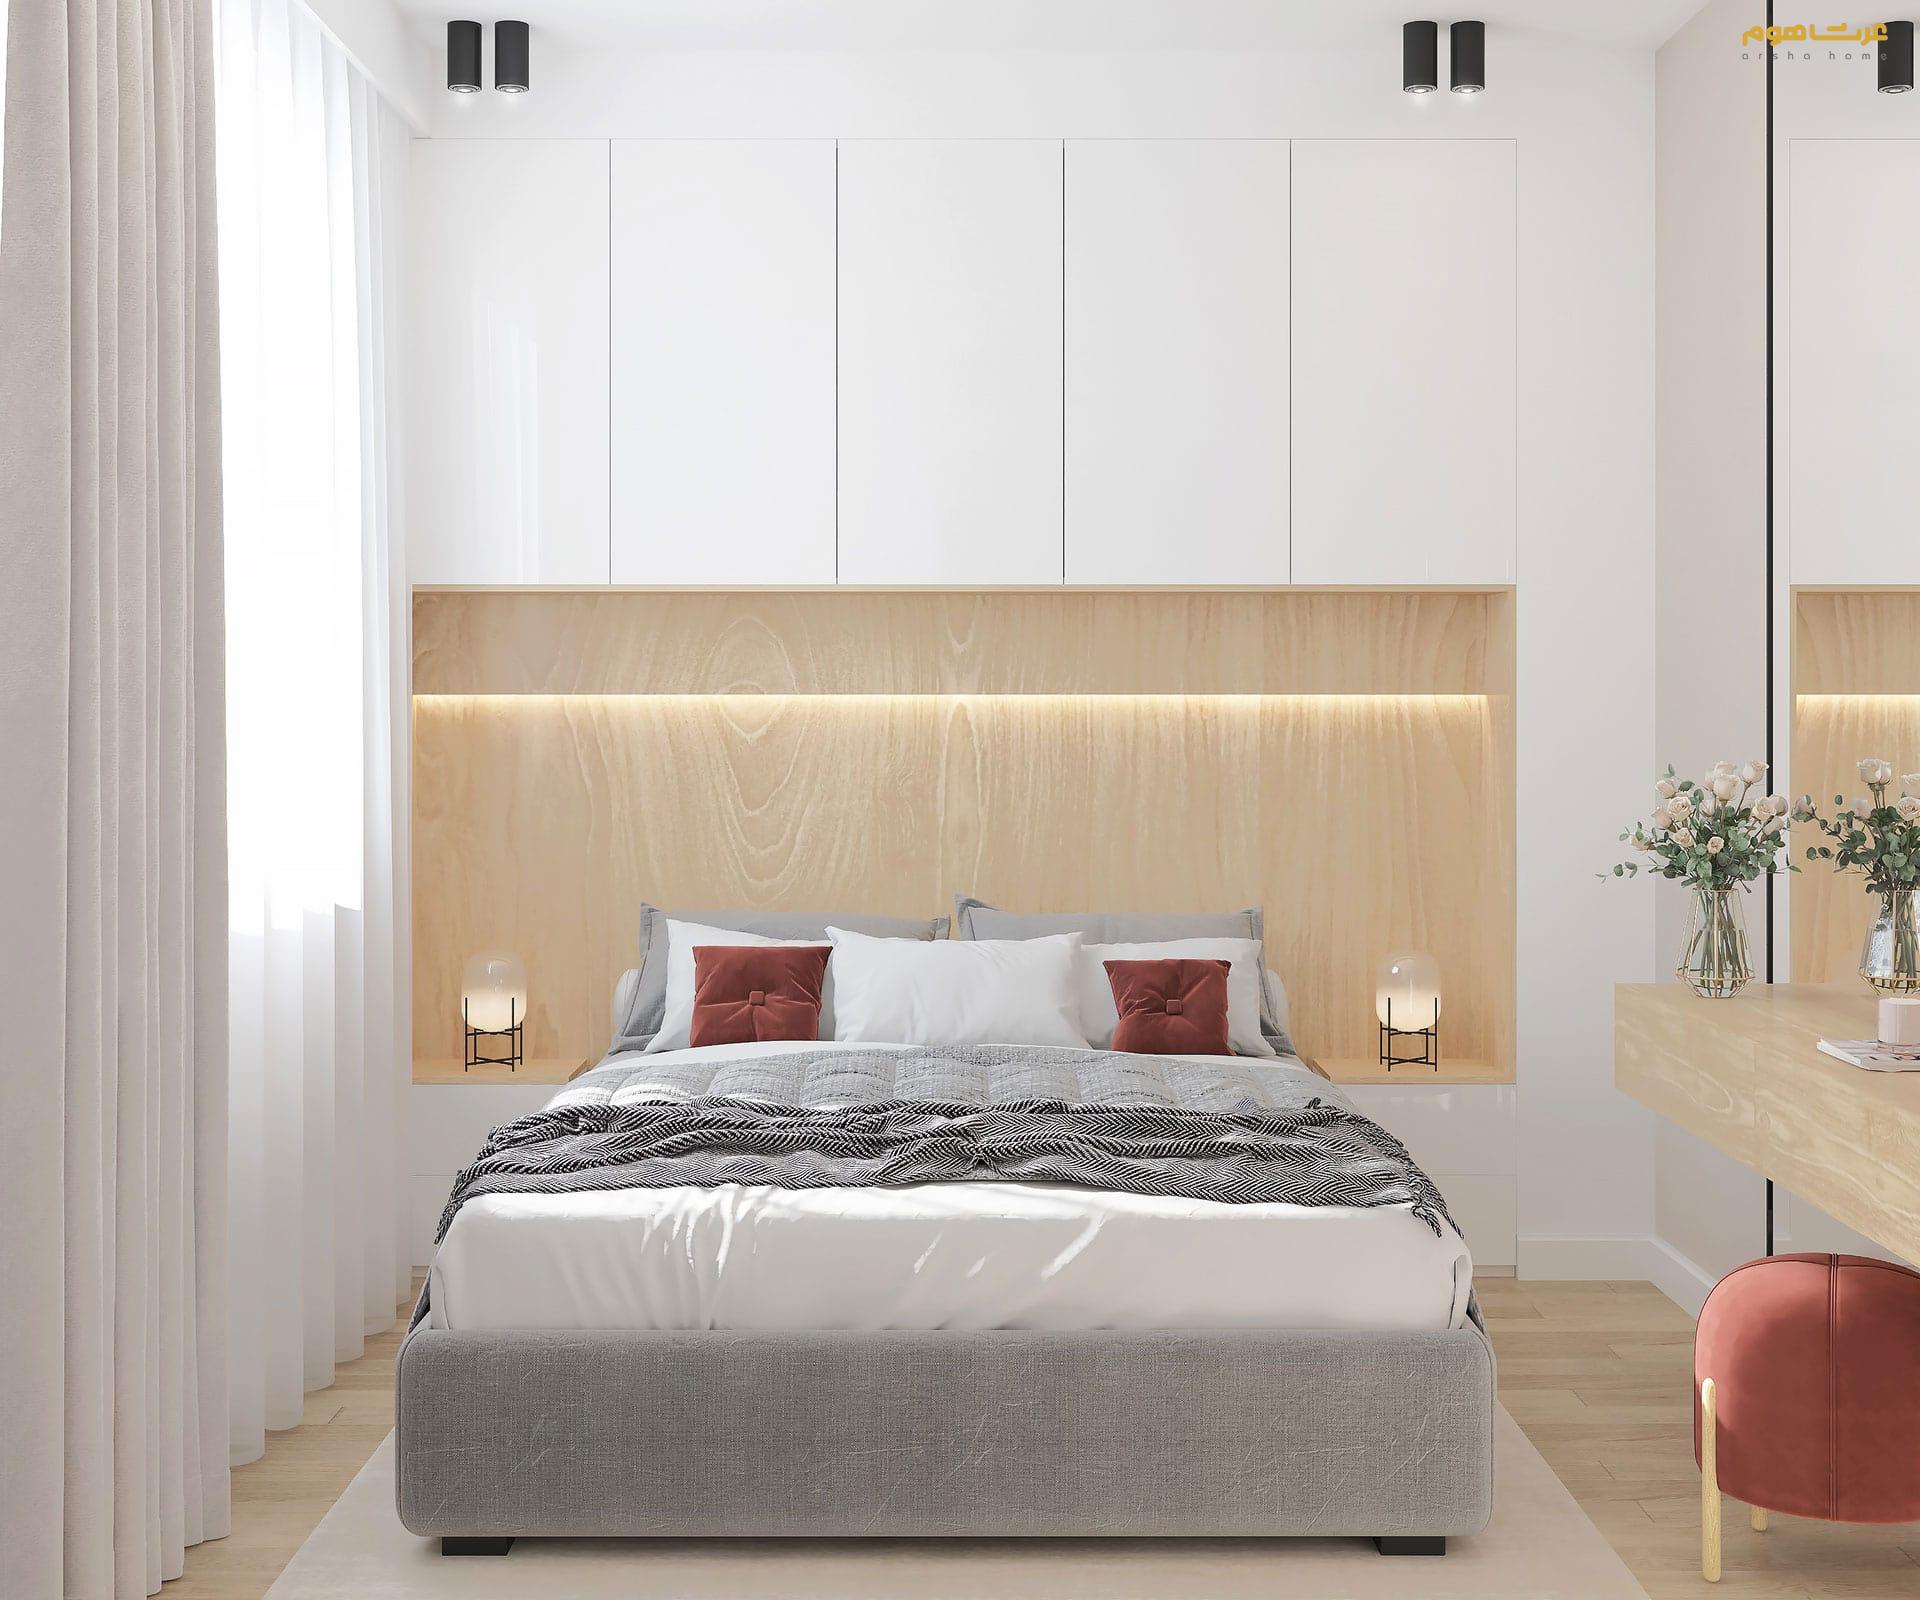 طراحی داخلی مدرن جنت آباد قادرمزی تخت چوبی اتاق خواب